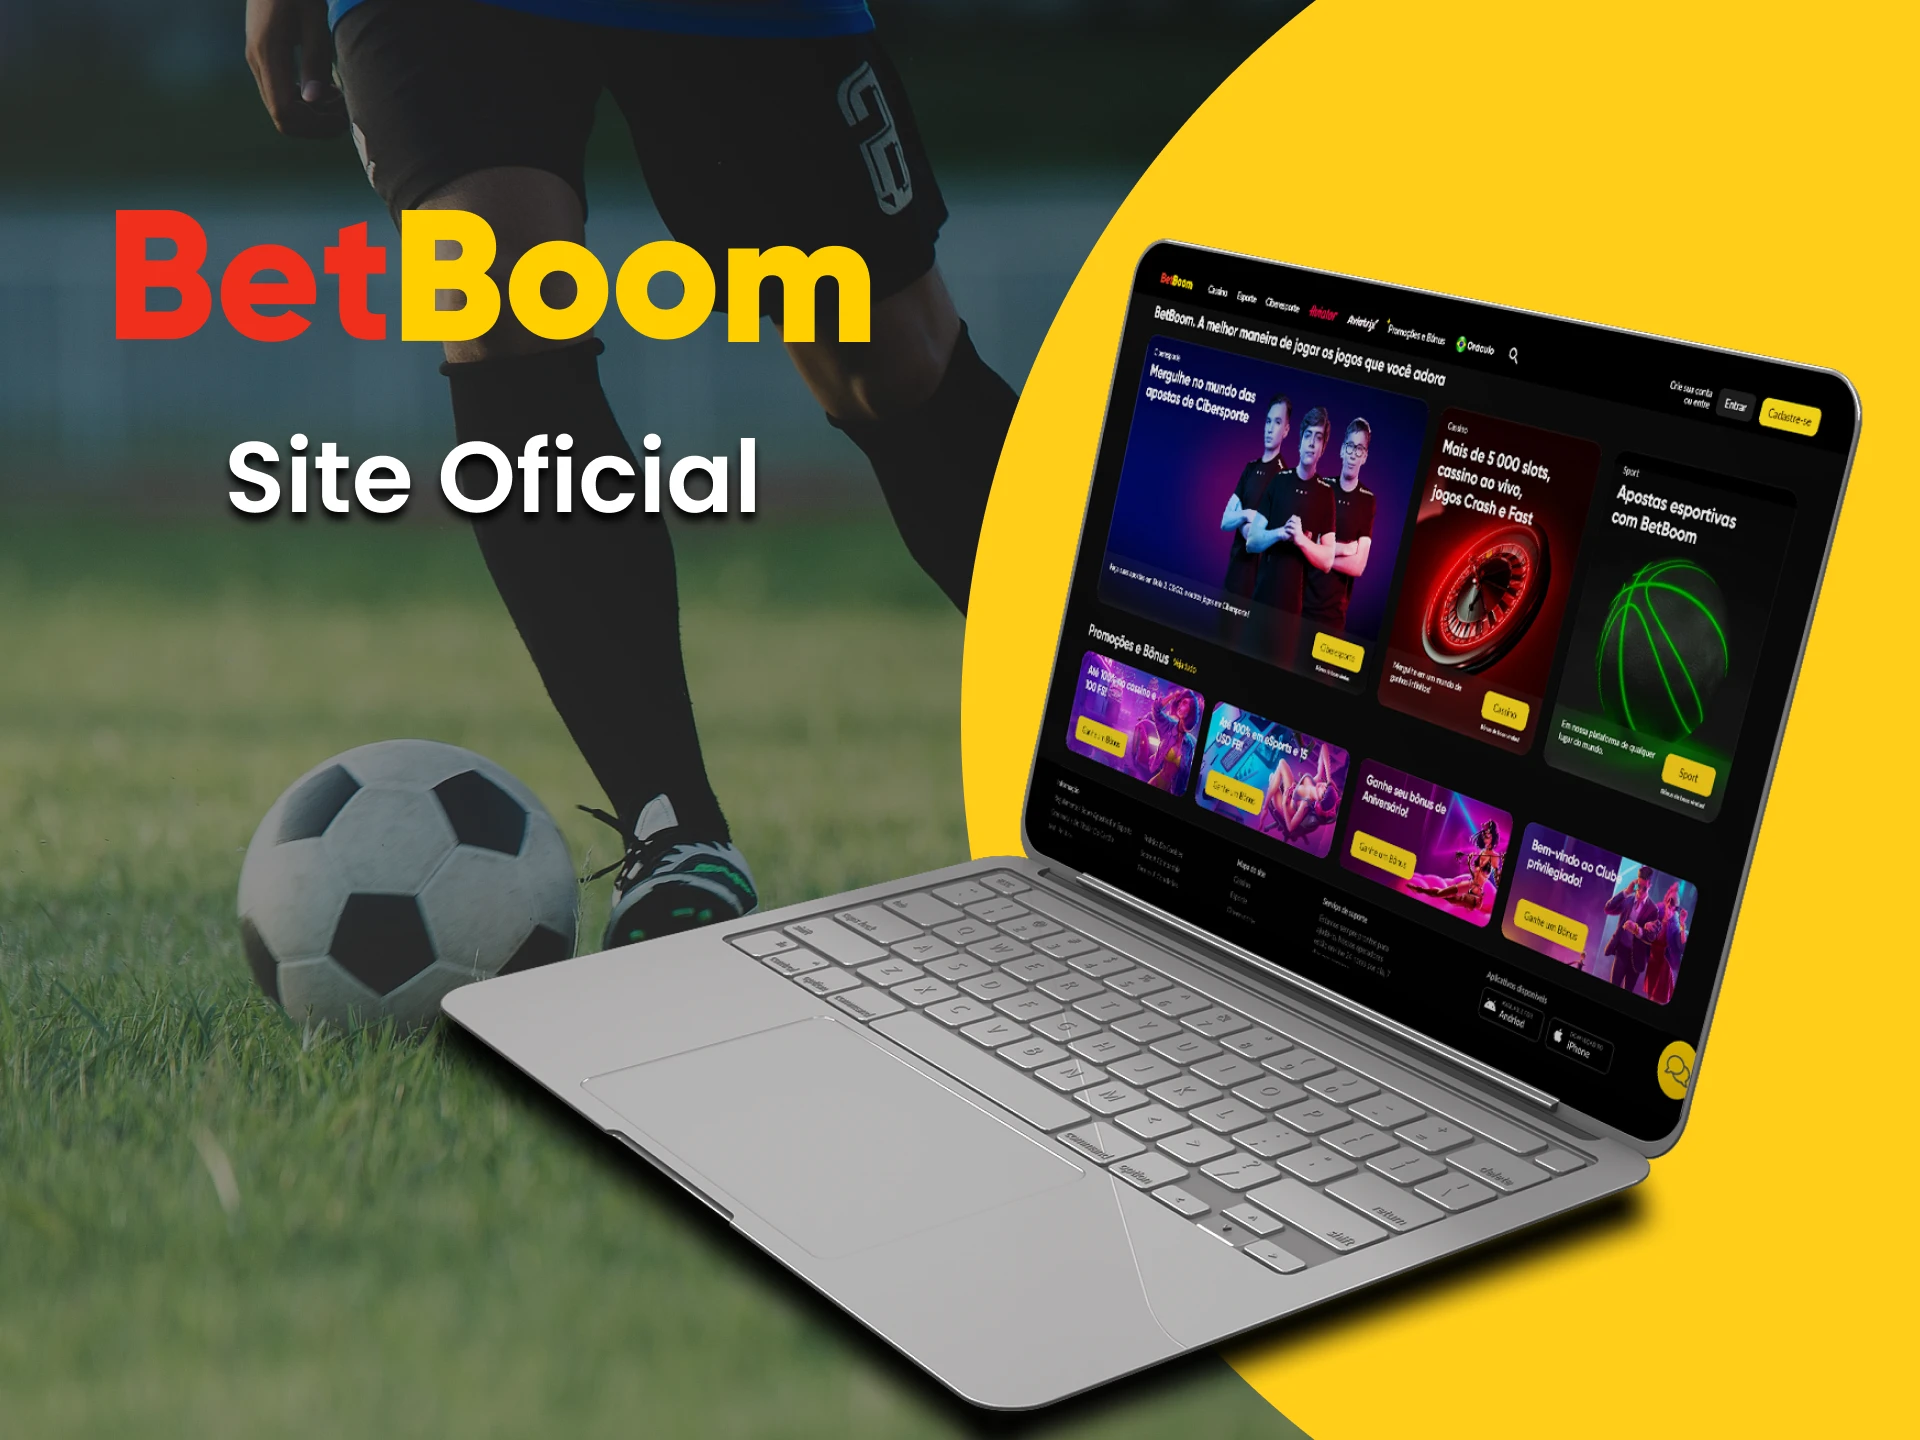 Visite a página oficial do site BetBoom apostas.